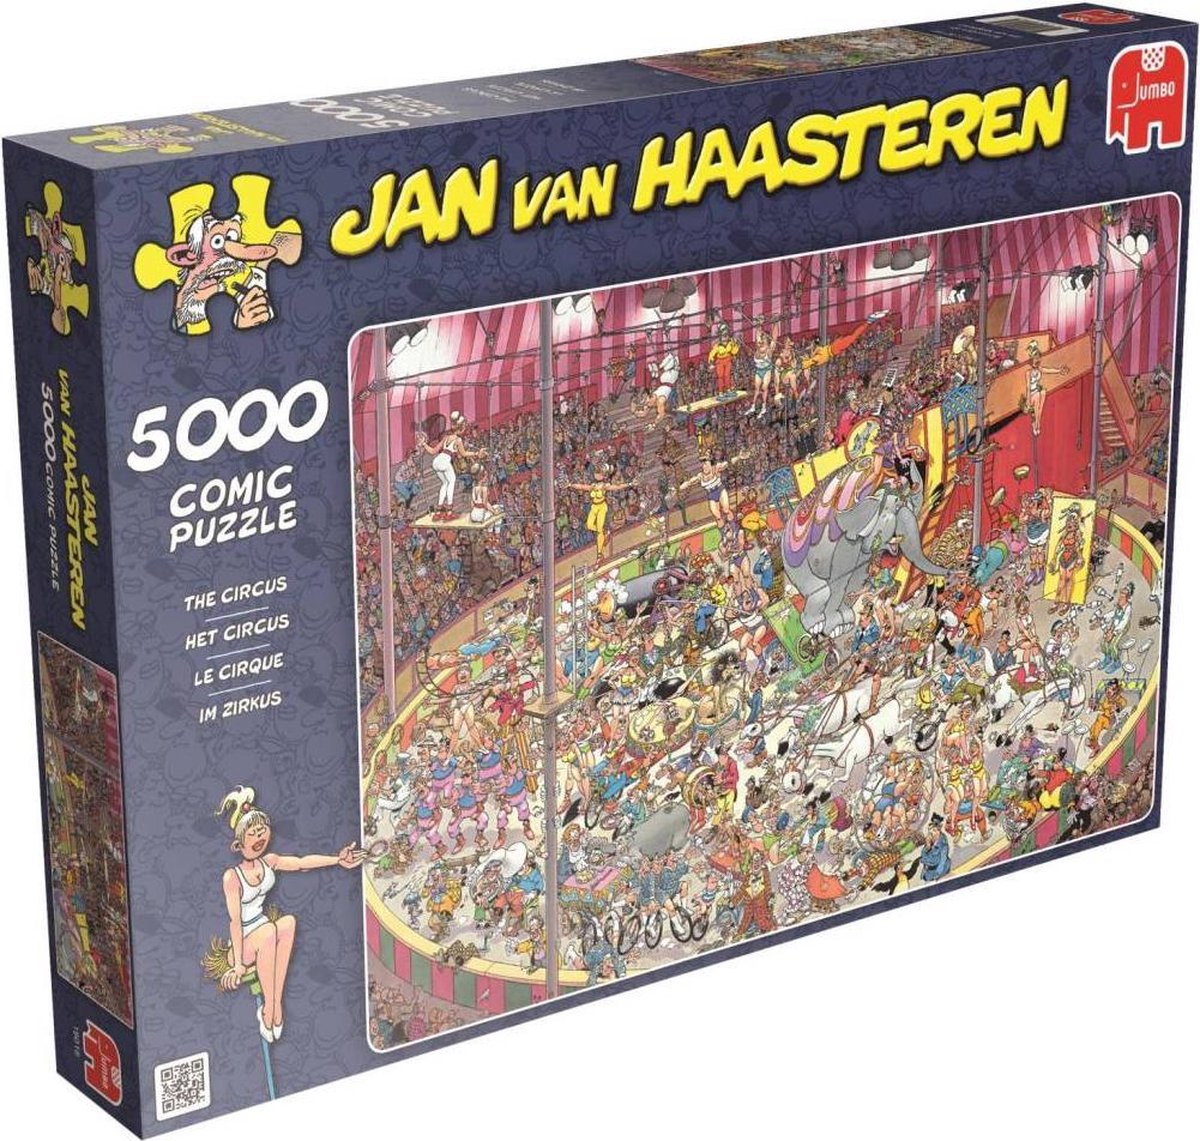 Gezichtsvermogen herstel Toevlucht Jan van Haasteren Circus puzzel - Legpuzzel - 5000 stukjes | bol.com